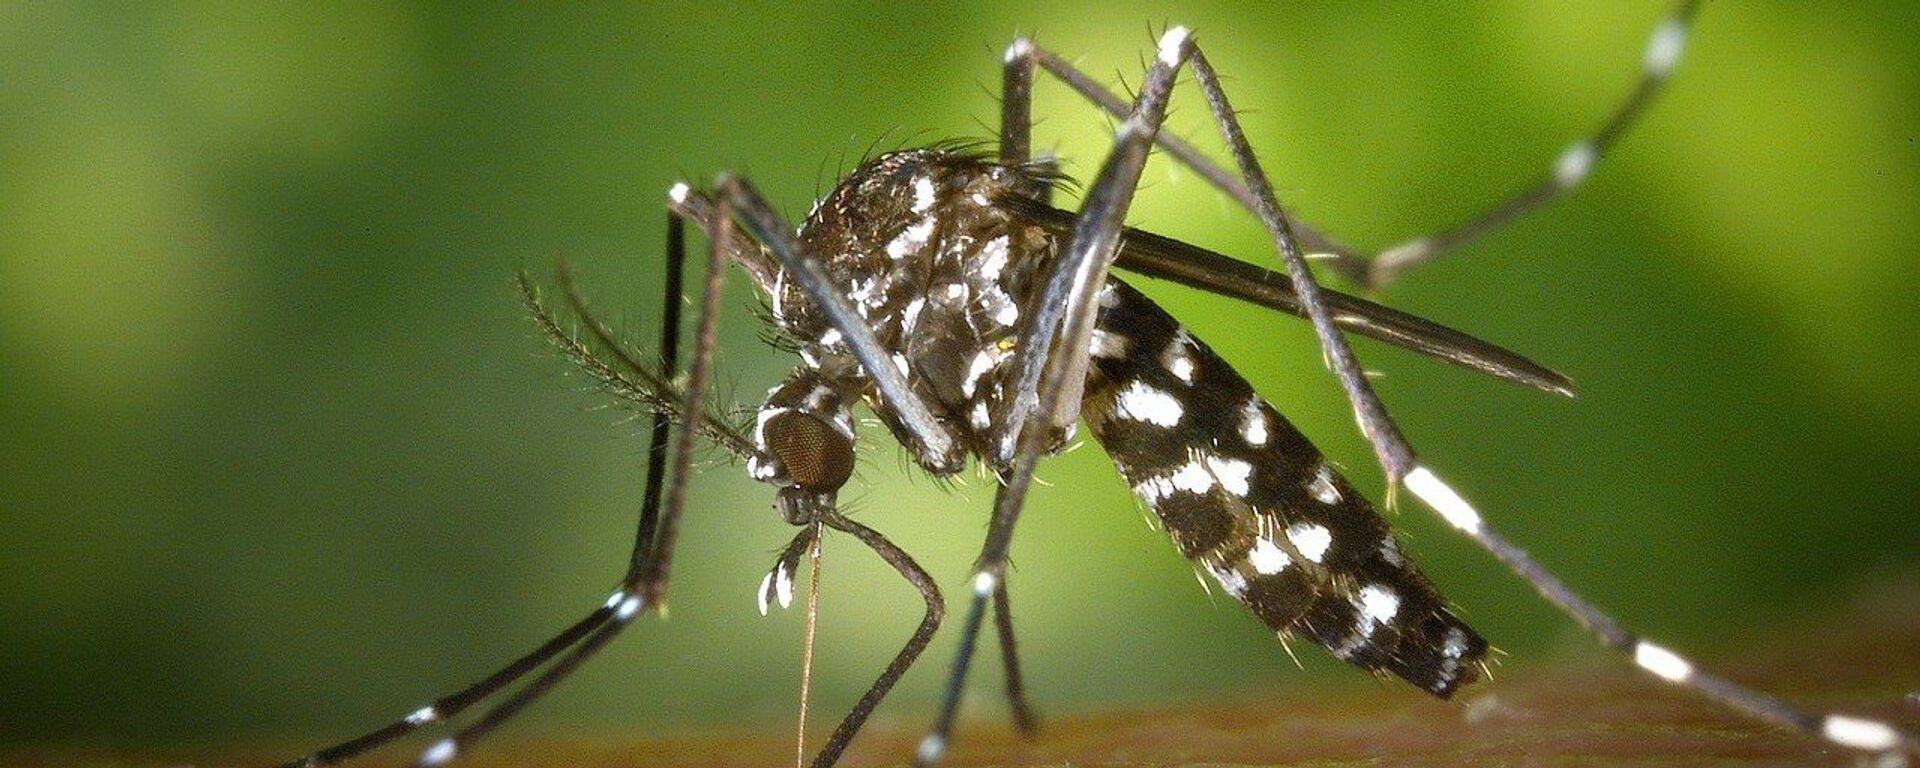 Азиатский тигровый комар - Sputnik Грузия, 1920, 23.09.2020